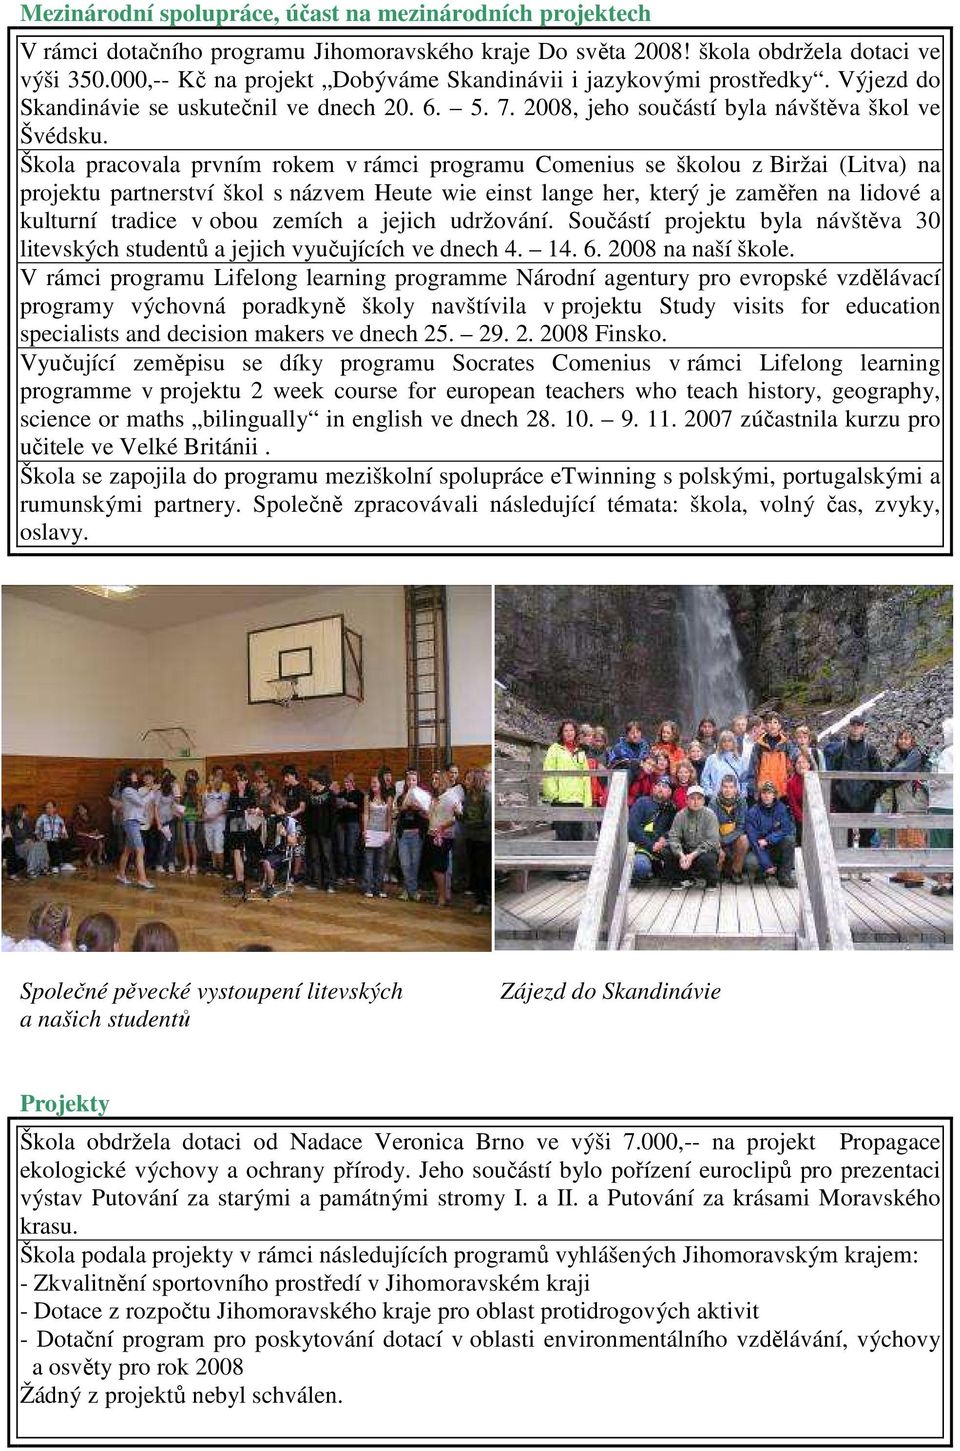 Škola pracovala prvním rokem v rámci programu Comenius se školou z Biržai (Litva) na projektu partnerství škol s názvem Heute wie einst lange her, který je zaměřen na lidové a kulturní tradice v obou